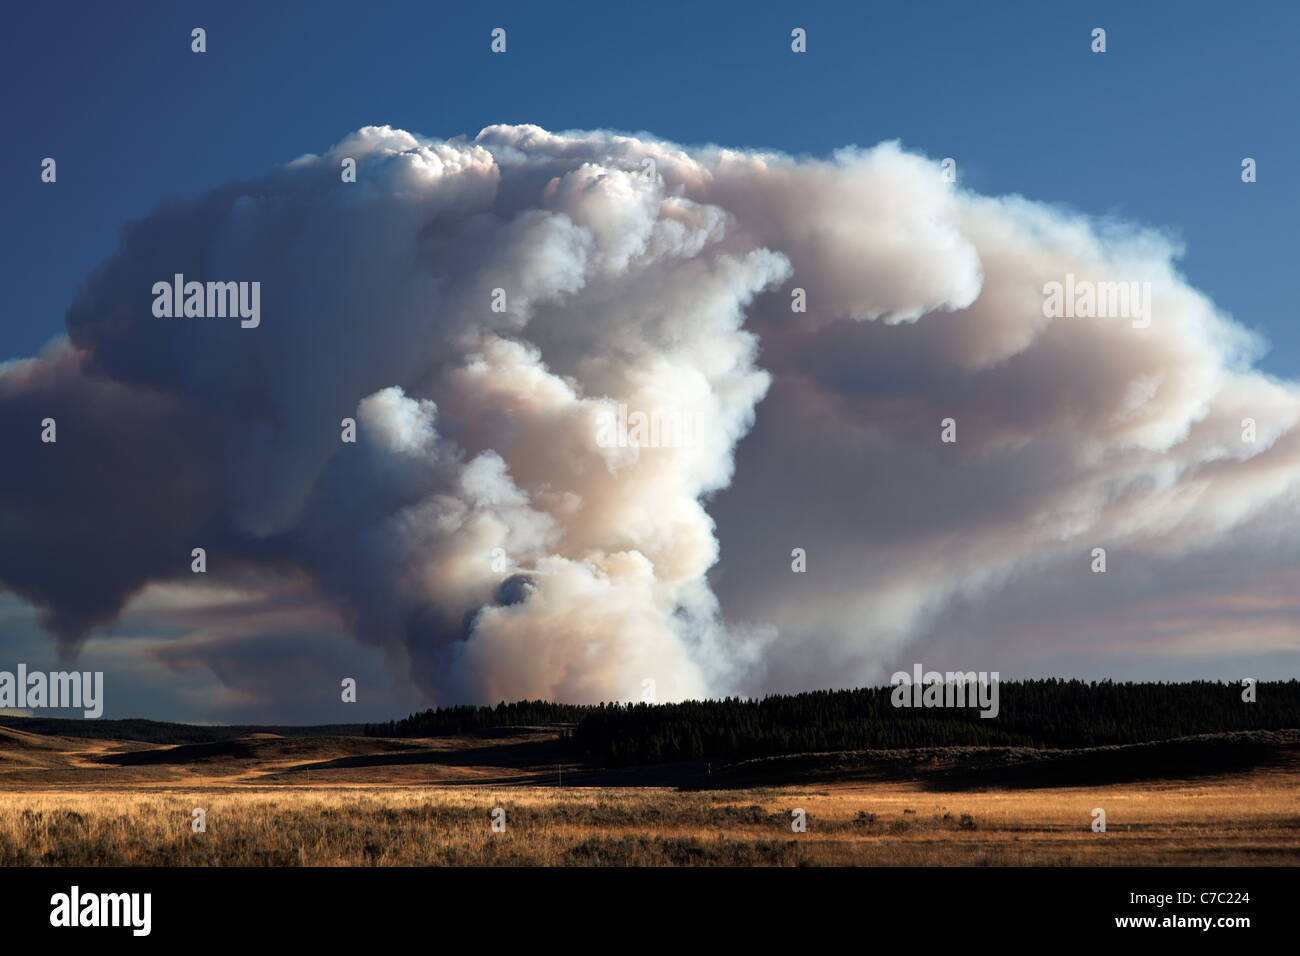 Rauch und Flammen des Waldes Feuer brennt auf Mittelland bei Sonnenuntergang von Hayden Valley, Yellowstone National Park aus gesehen Stockfoto